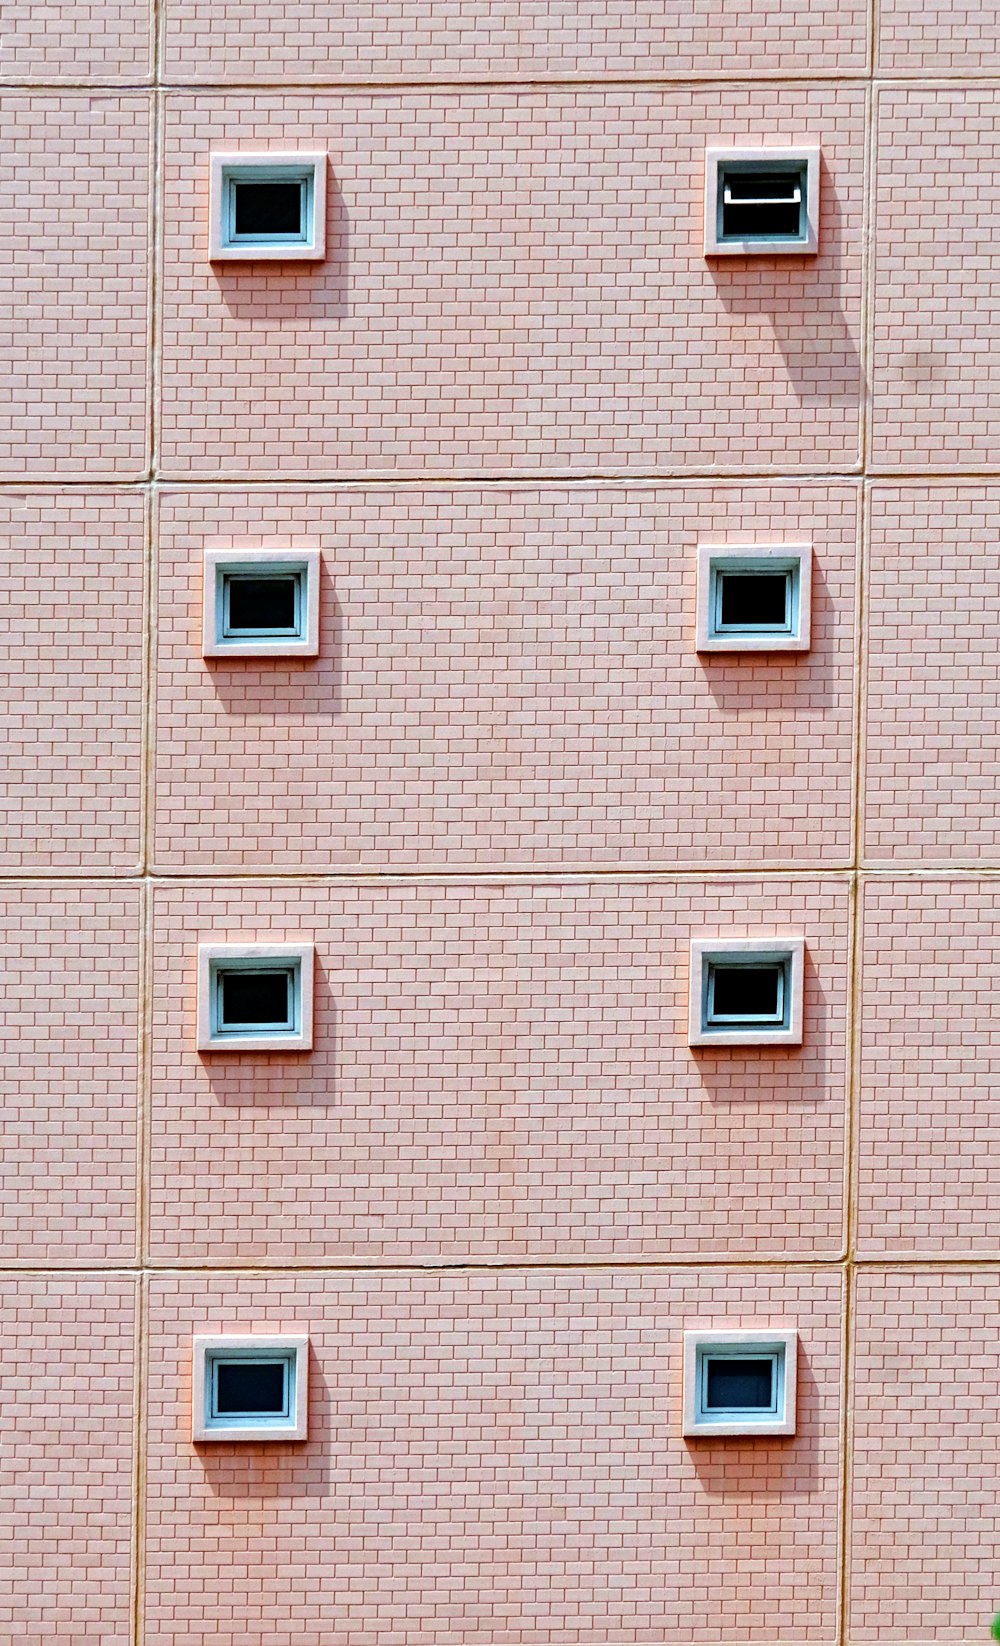 Mur de brique brune avec fenêtres blanches